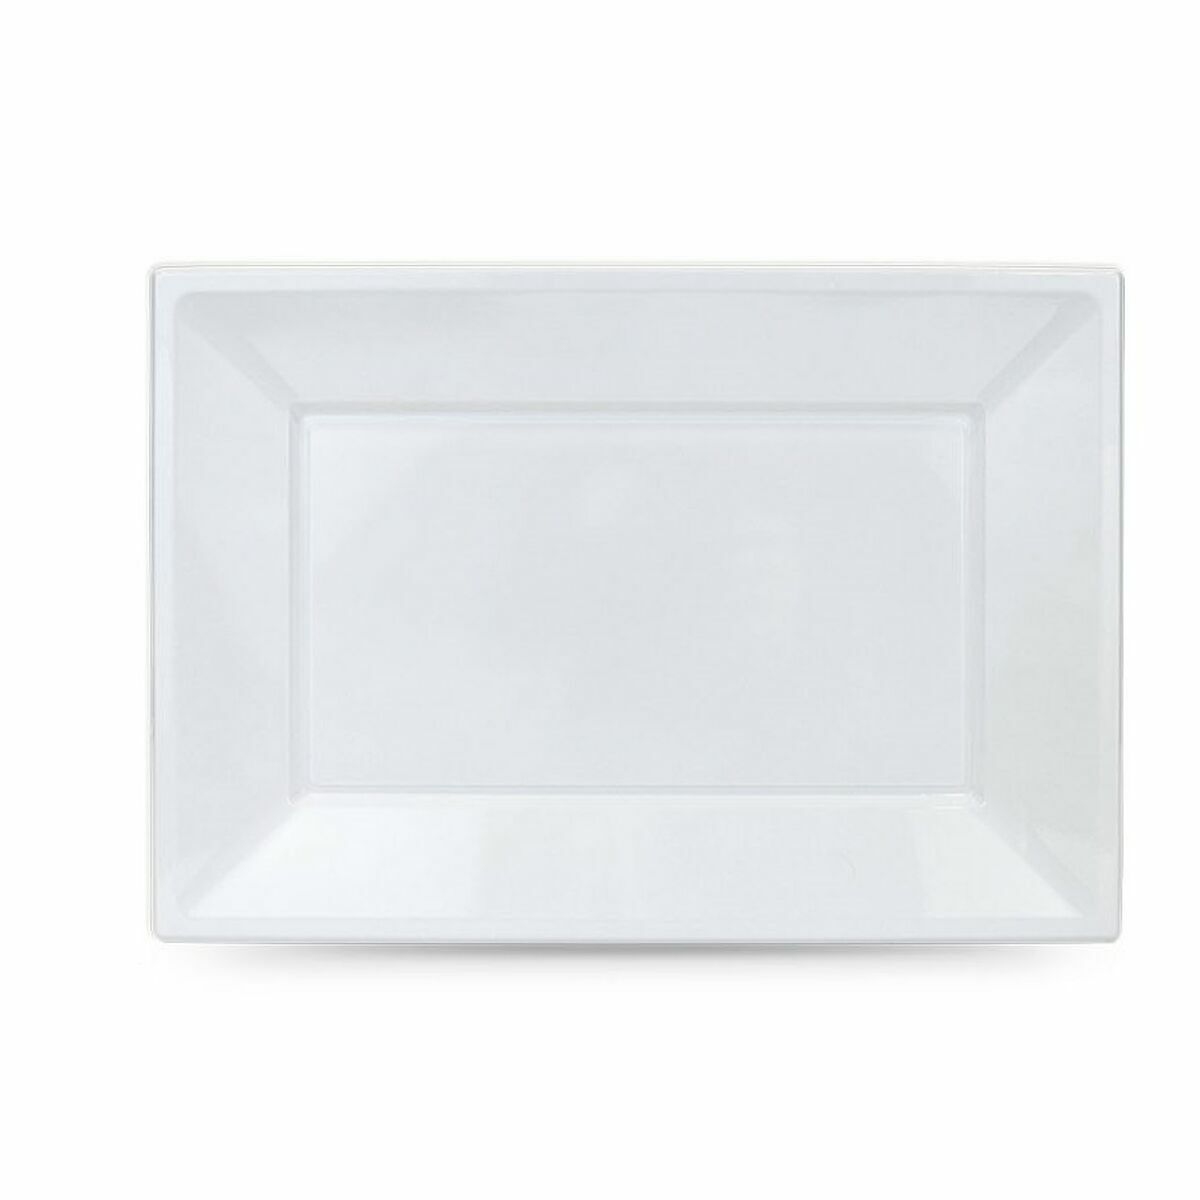 Mehrweg-Teller-Set Algon Weiß Kunststoff rechteckig 33 x 23 cm (36 Stück)